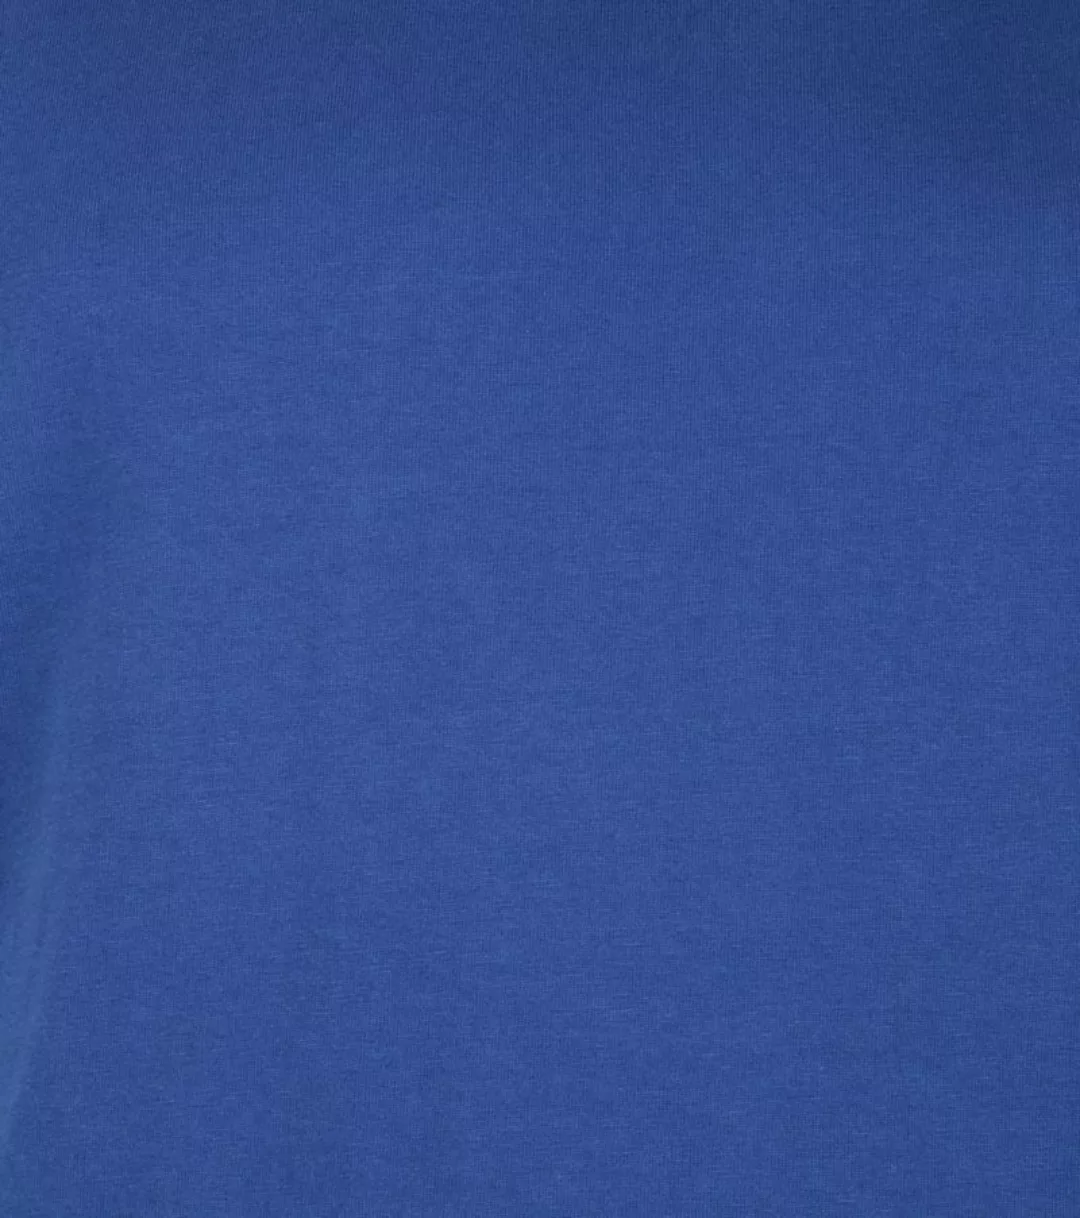 Colorful Standard Organic T-shirt Blau - Größe S günstig online kaufen